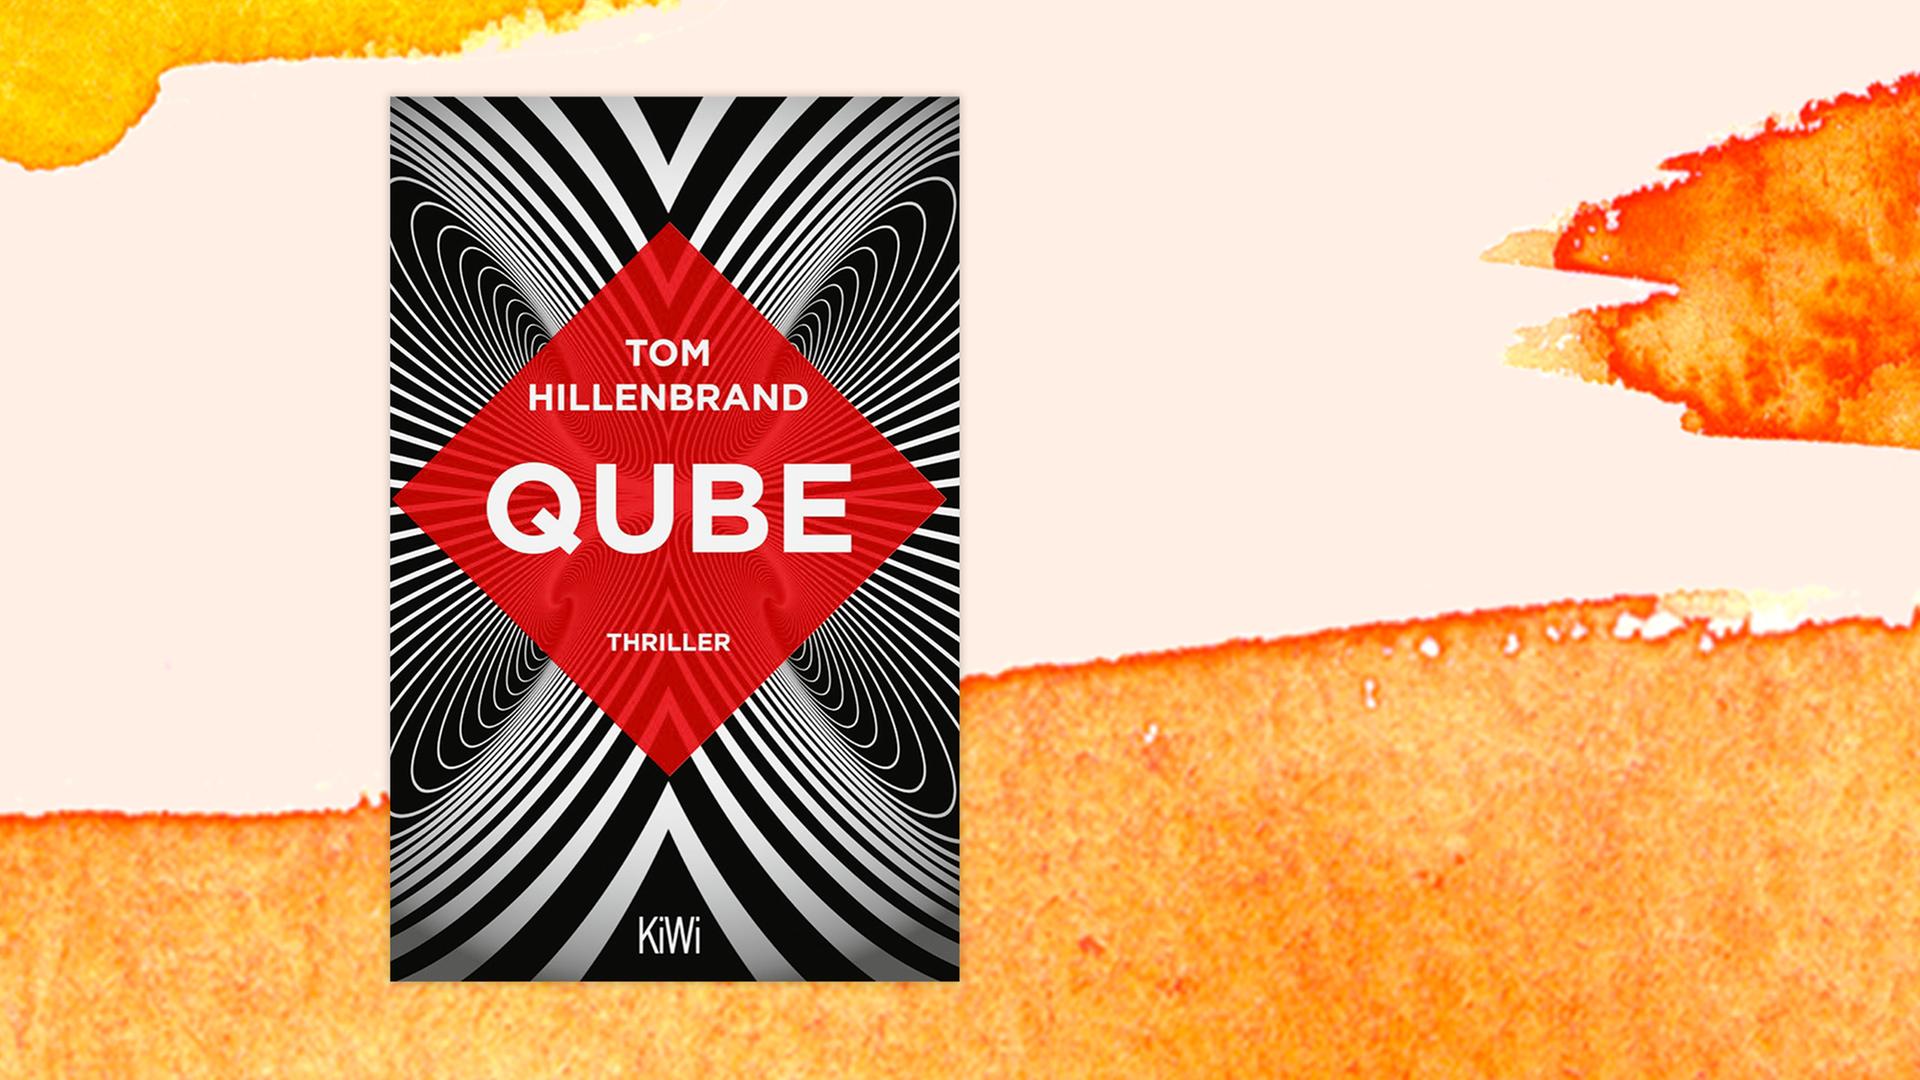 Das Buchcover von Tom Hillenbrands Roman "Qube" auf pastellfarbenen Hintergrund.